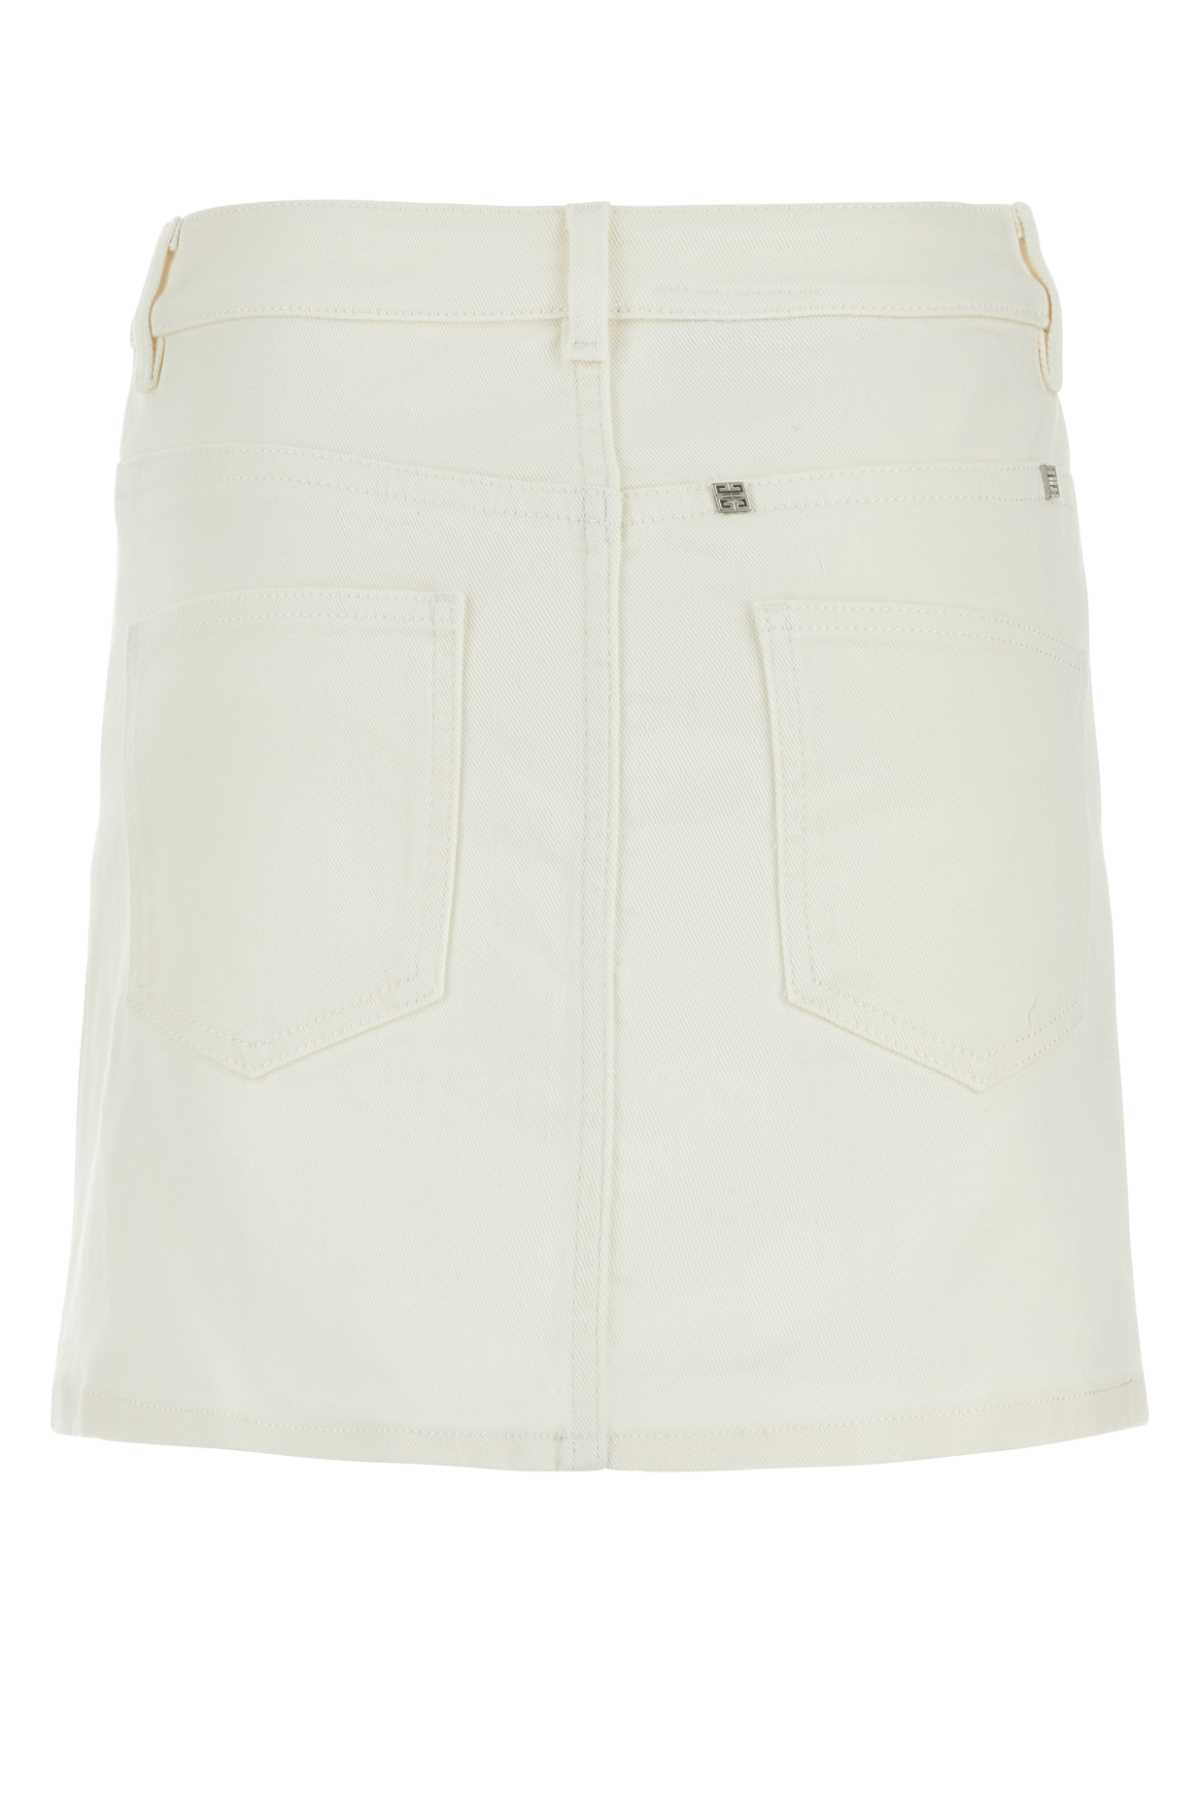 Shop Givenchy White Denim Mini Skirt